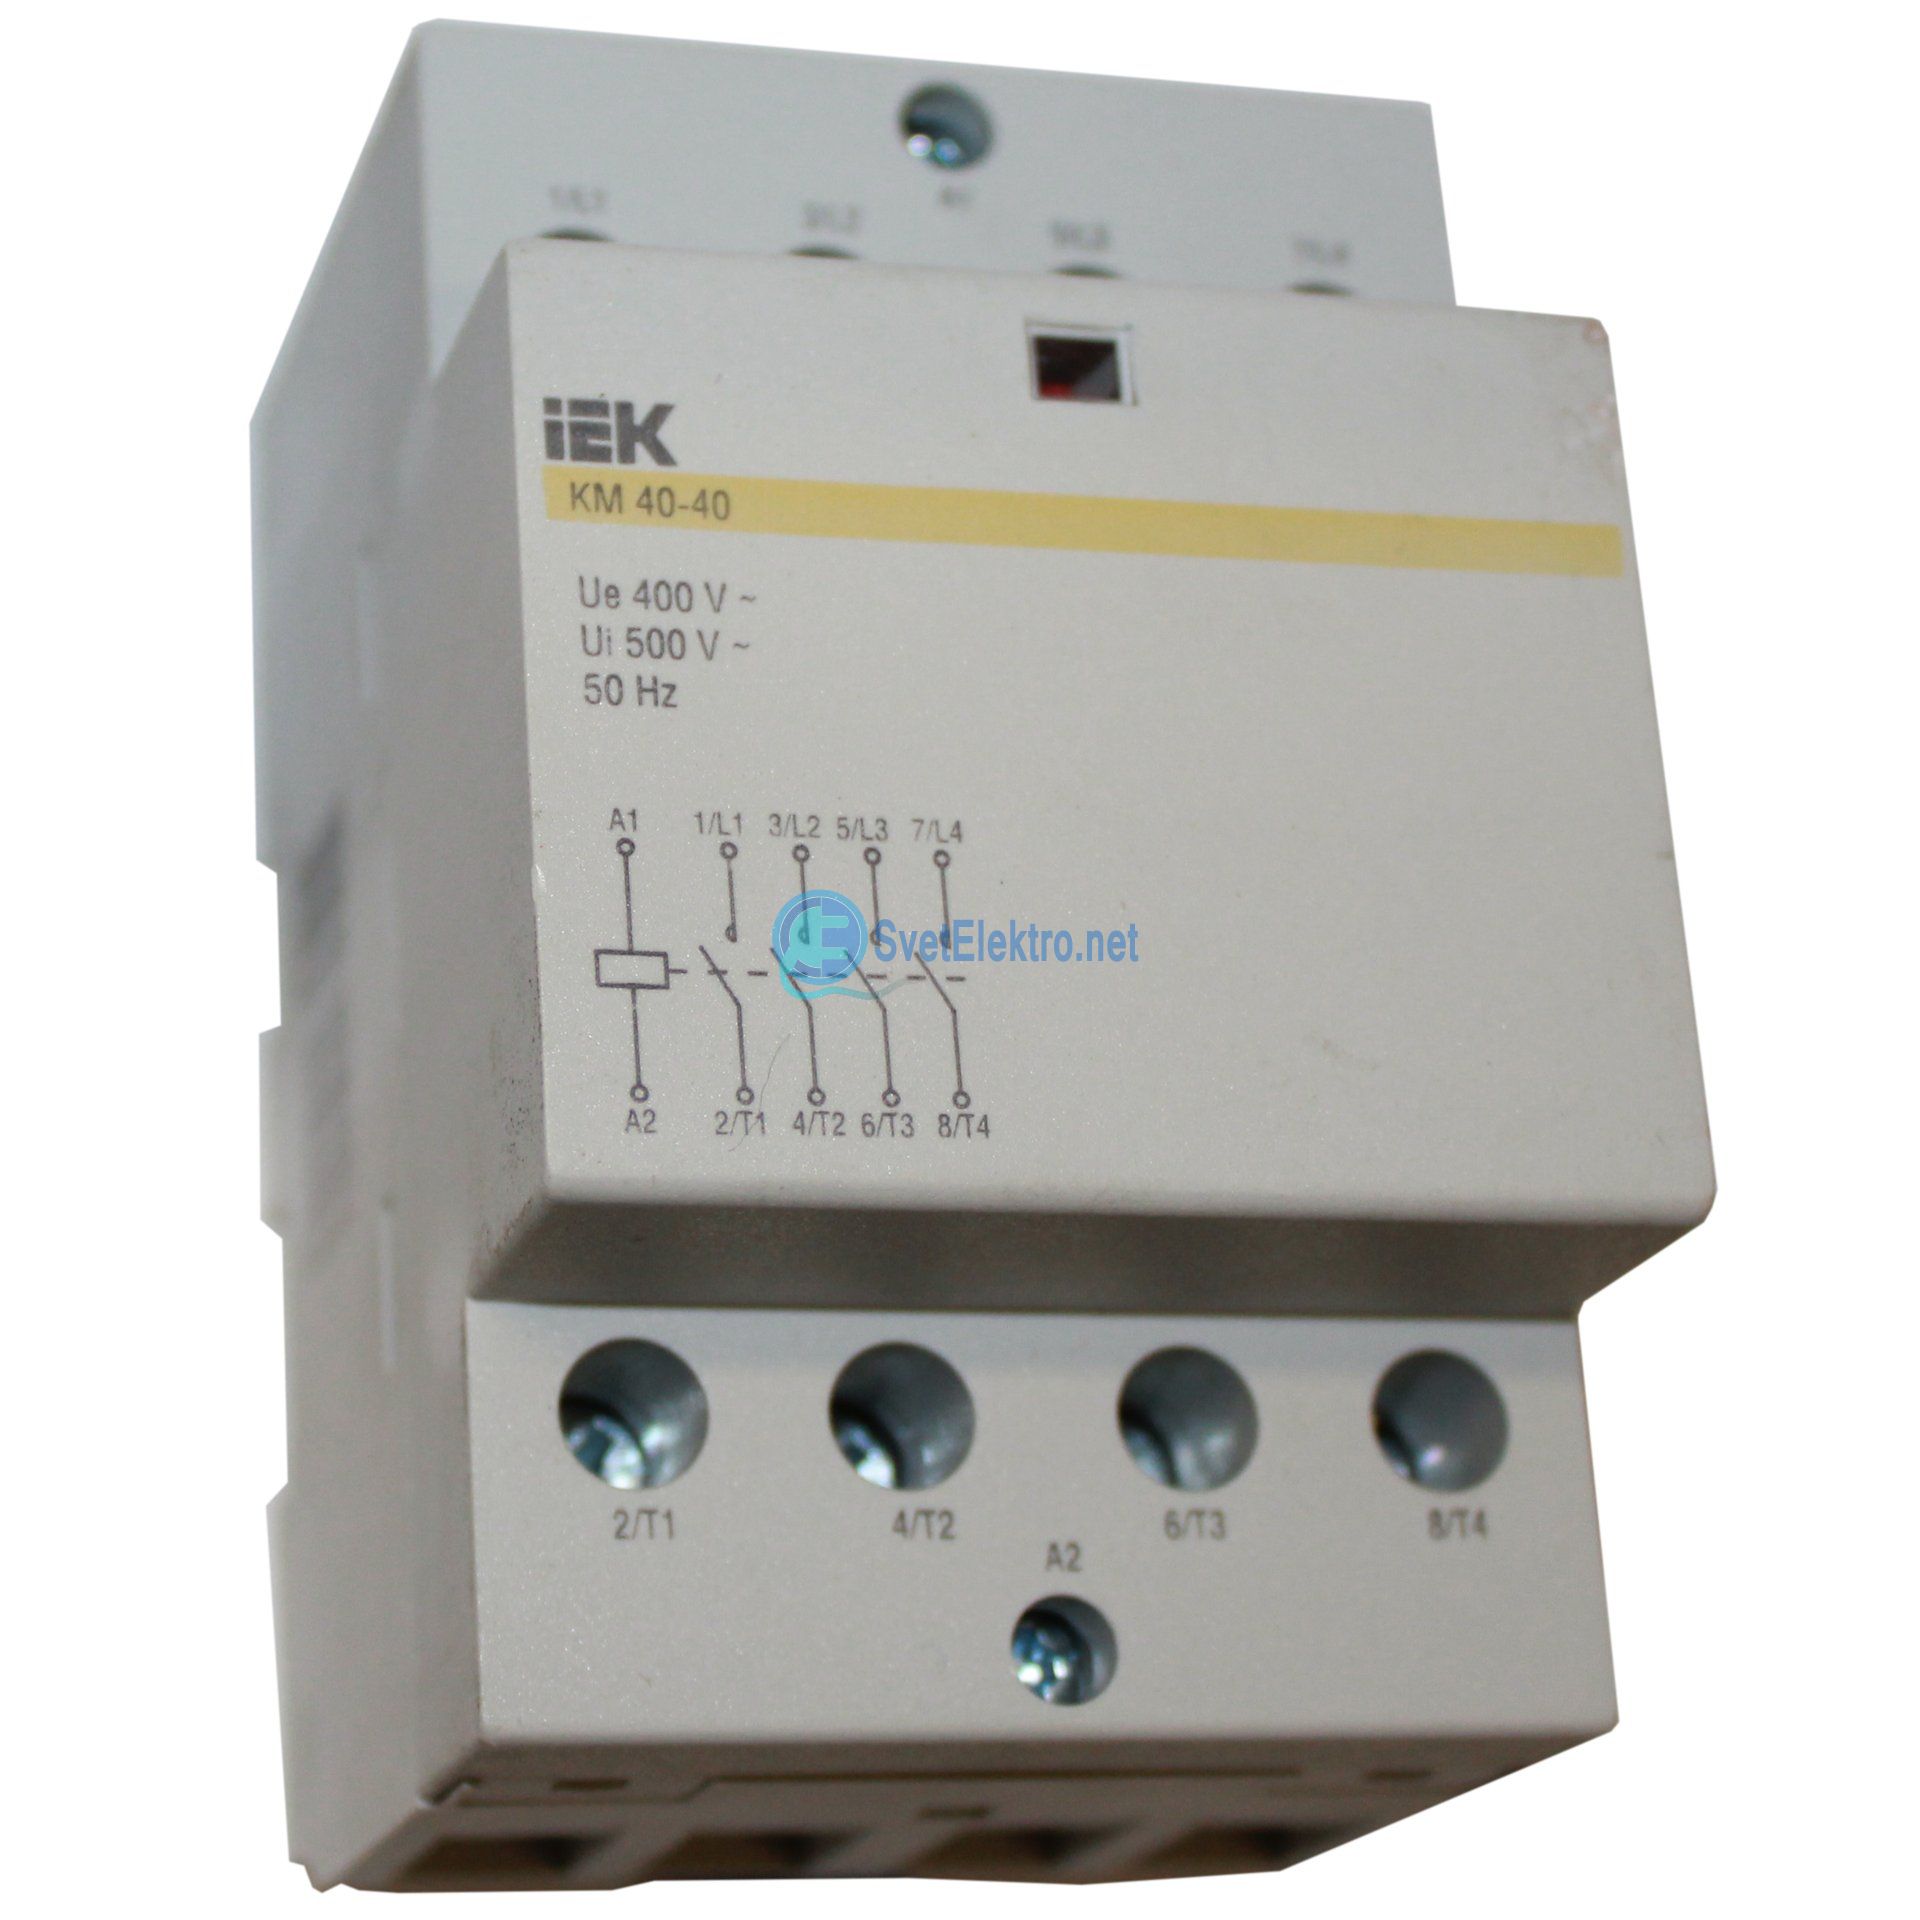 Модульные контакторы являются электрическими аппаратами, используемыми для связки переменного либо постоянного тока МК устанавливают на